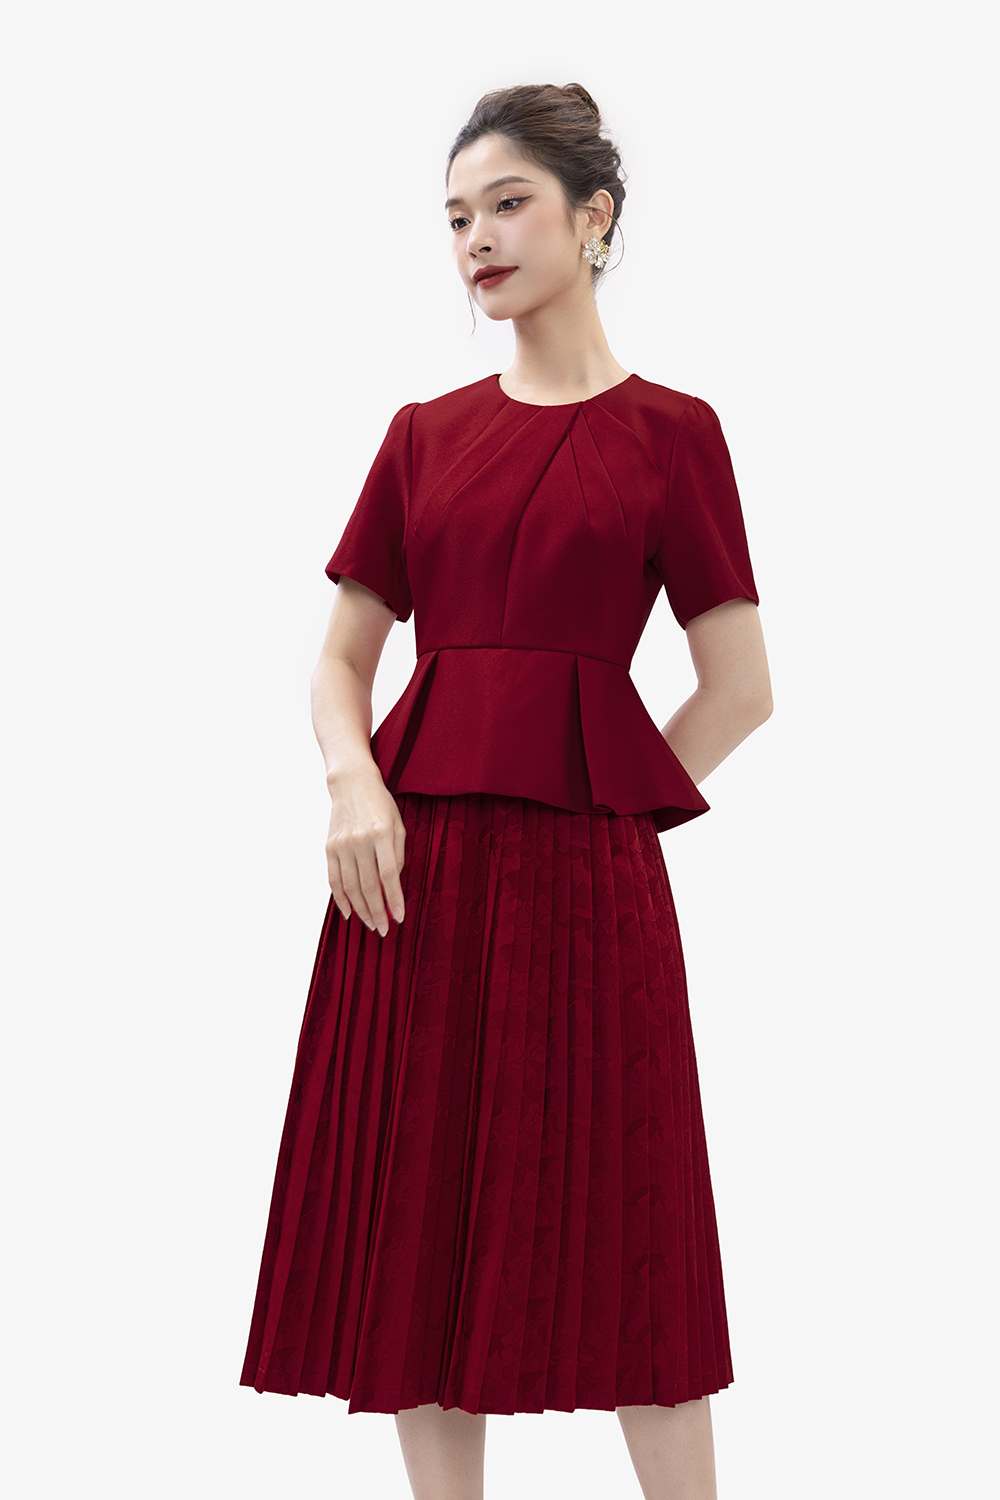 Đầm Phi Lụa Hoa Hồng Chân Váy Xếp Ly Sang Trọng - Giá 259.000đ tại HotDeal